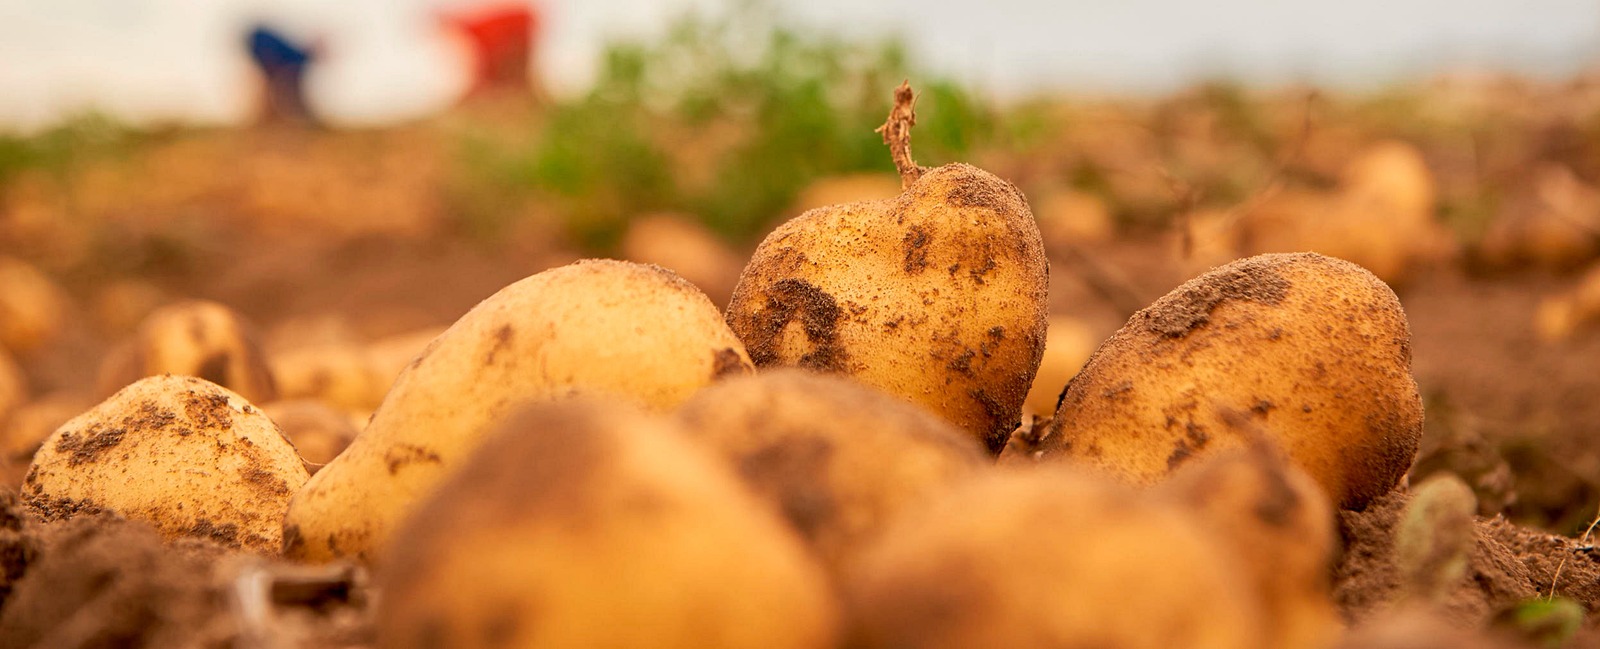 Ruolo del calcio nella produzione di patate